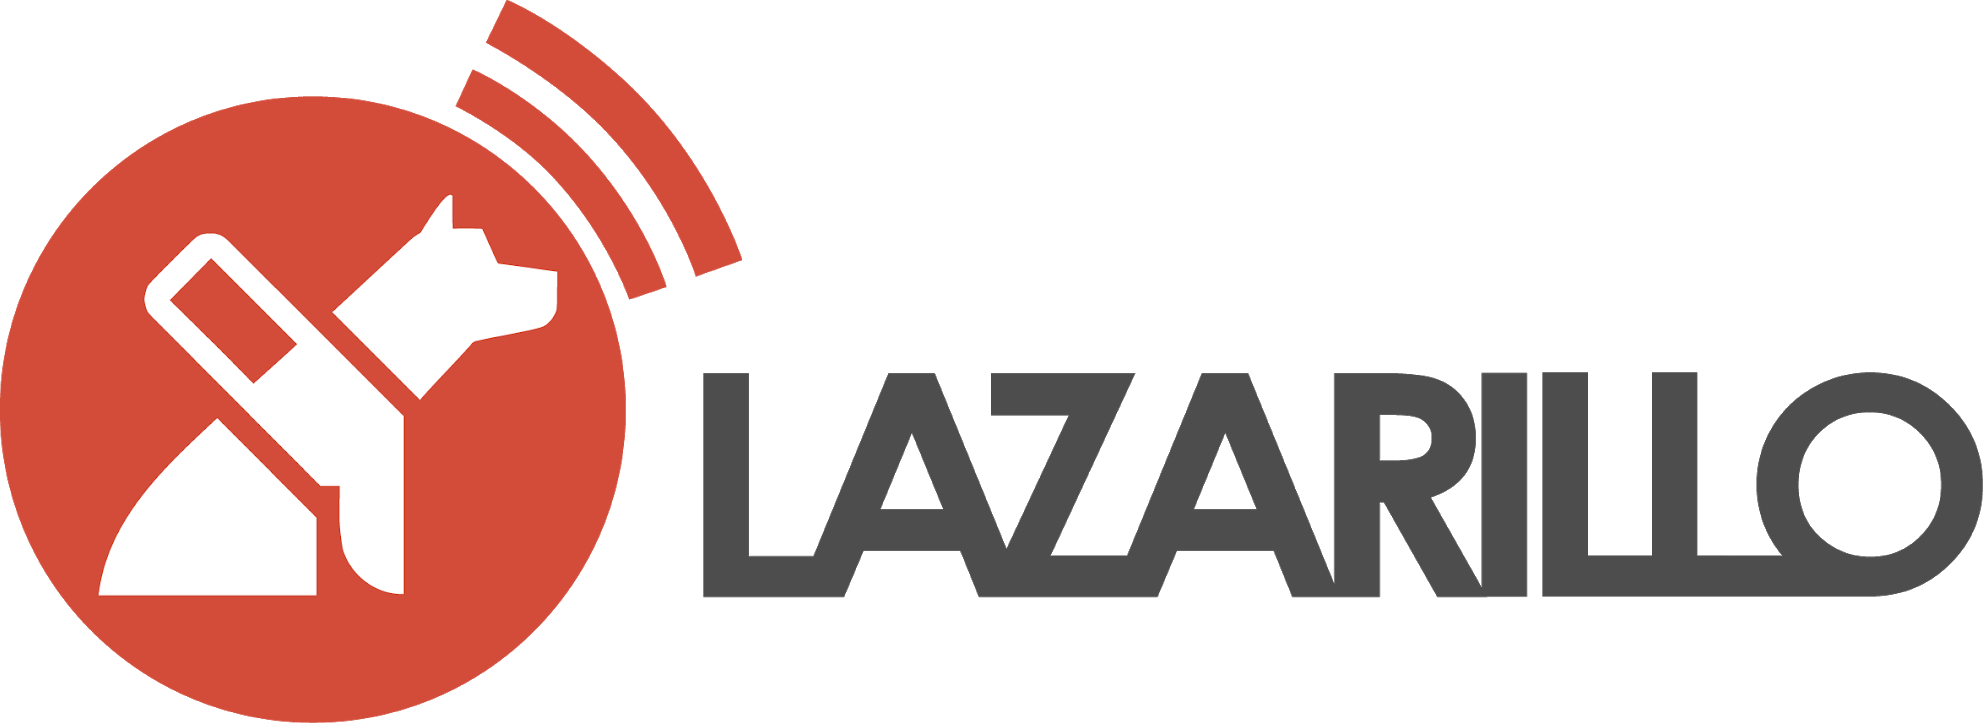 Lazarillo App